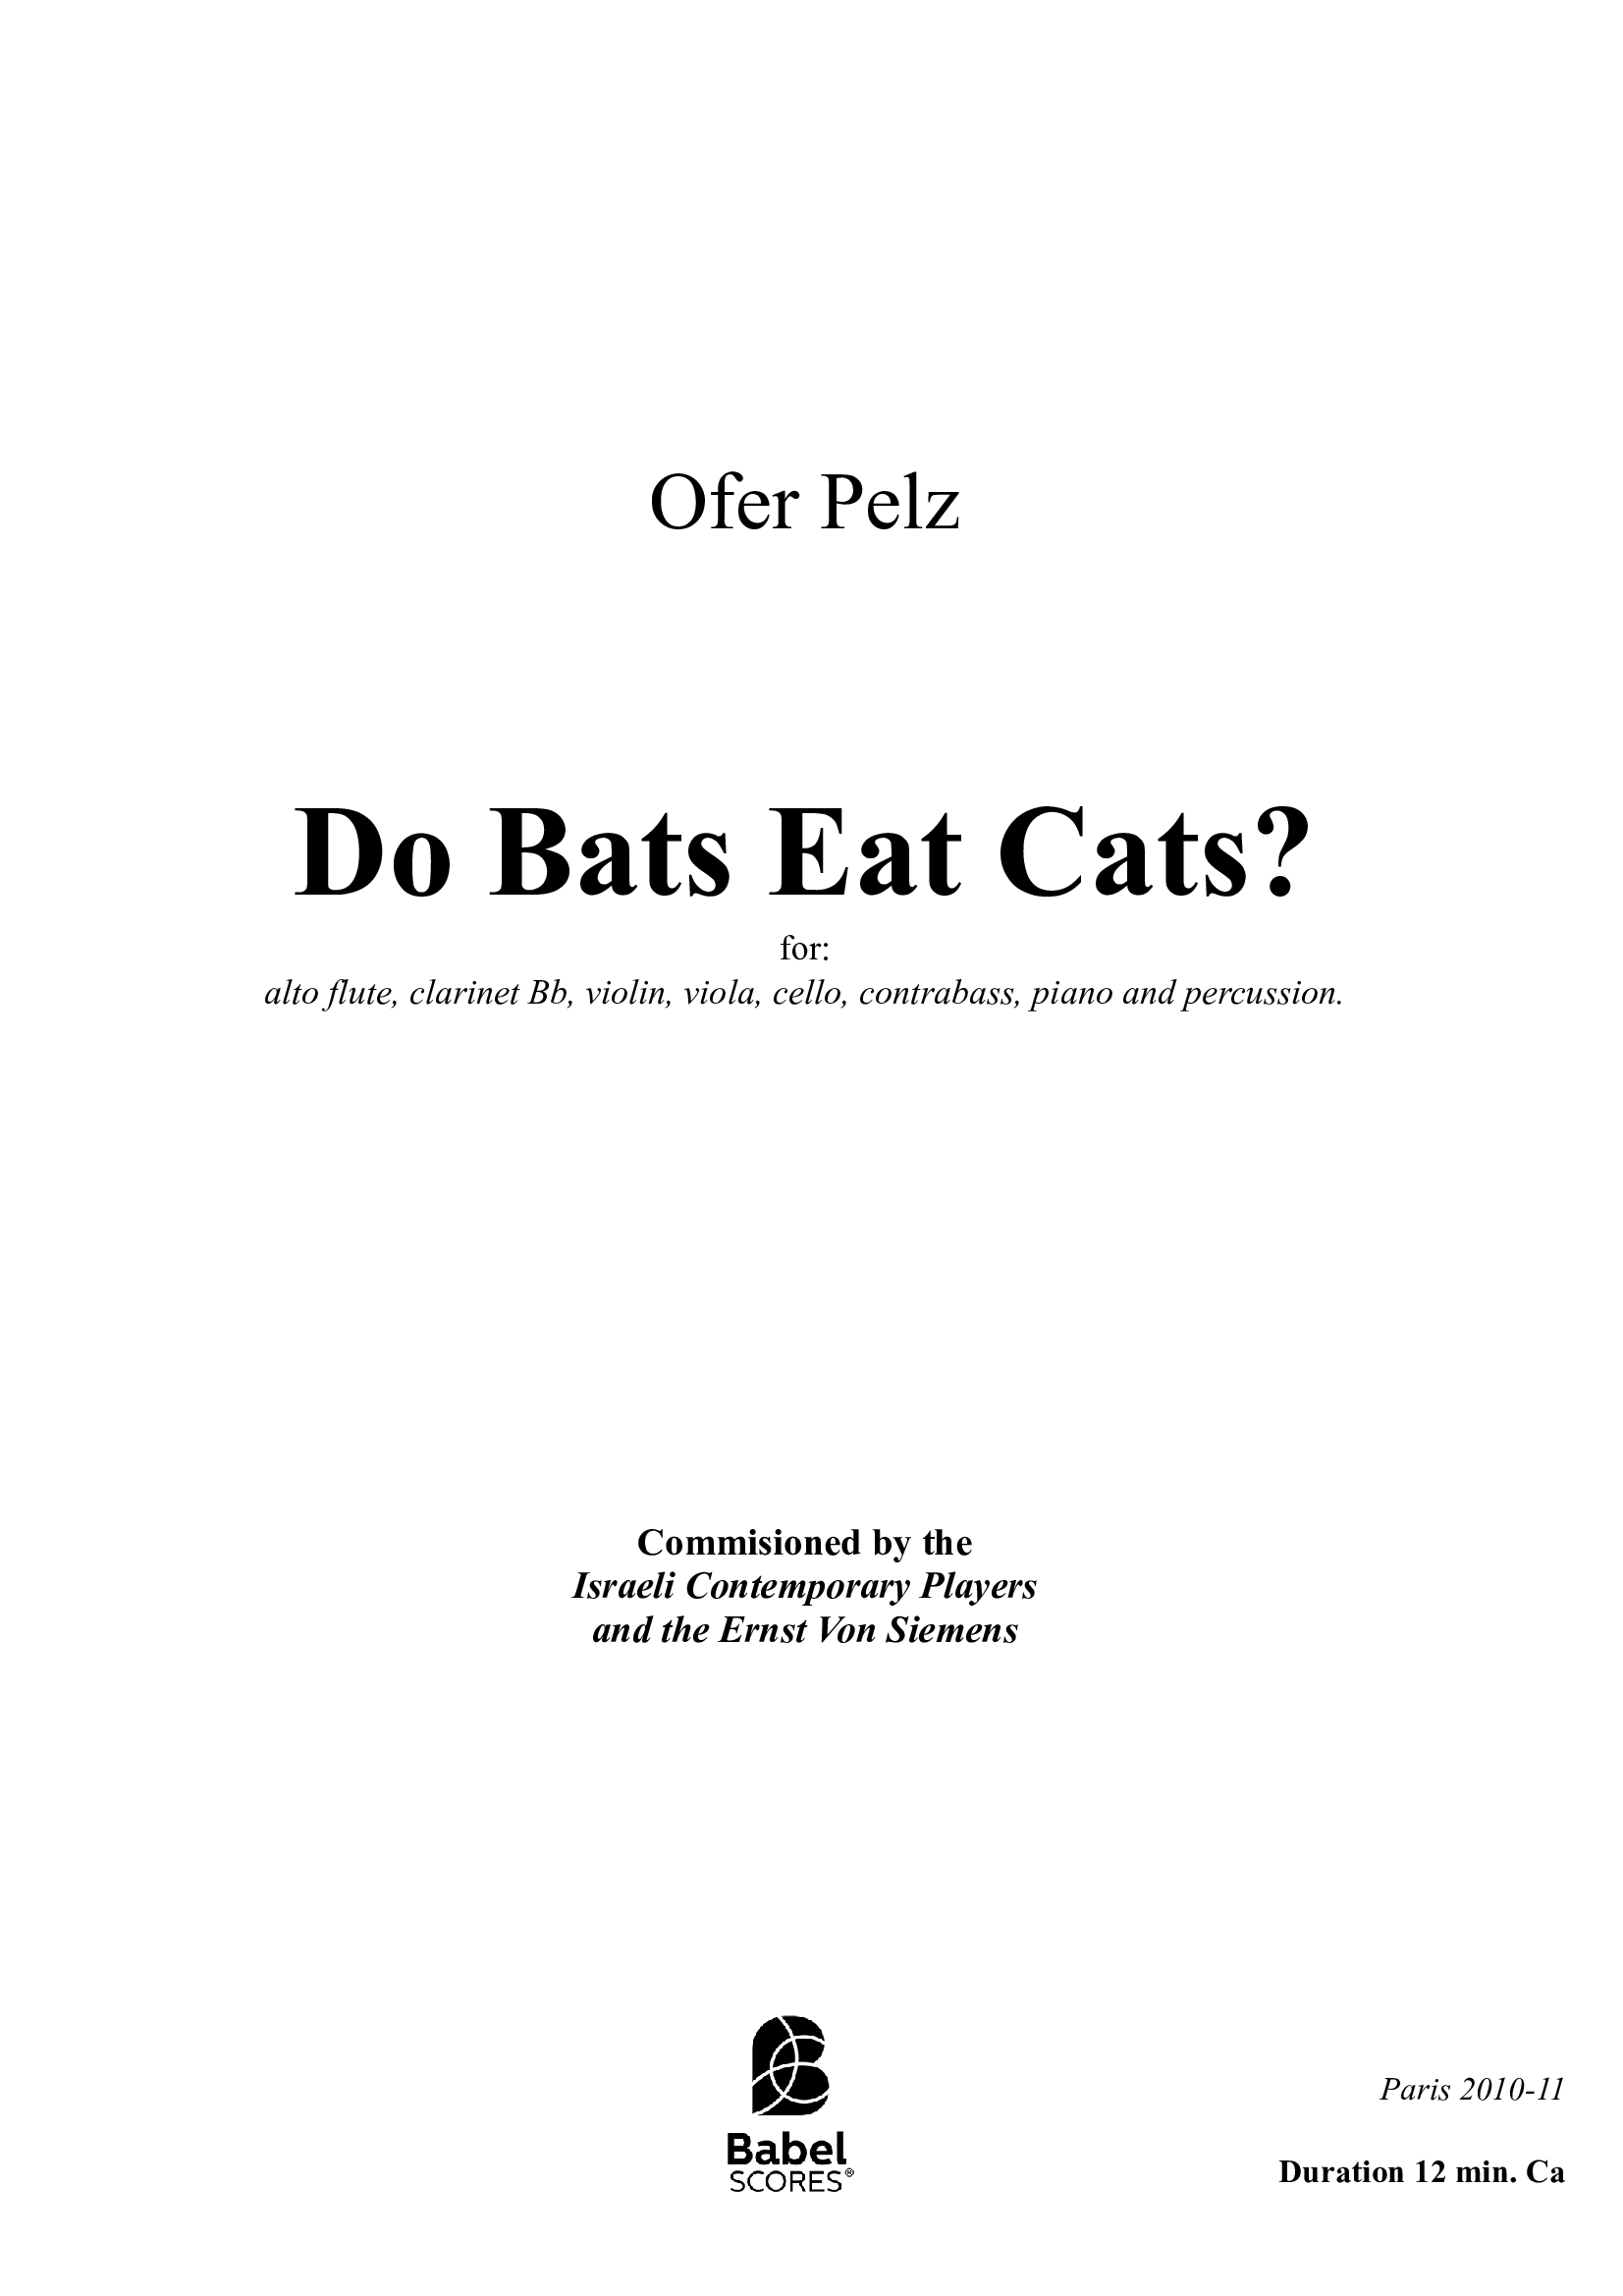 Do bats eat cats b